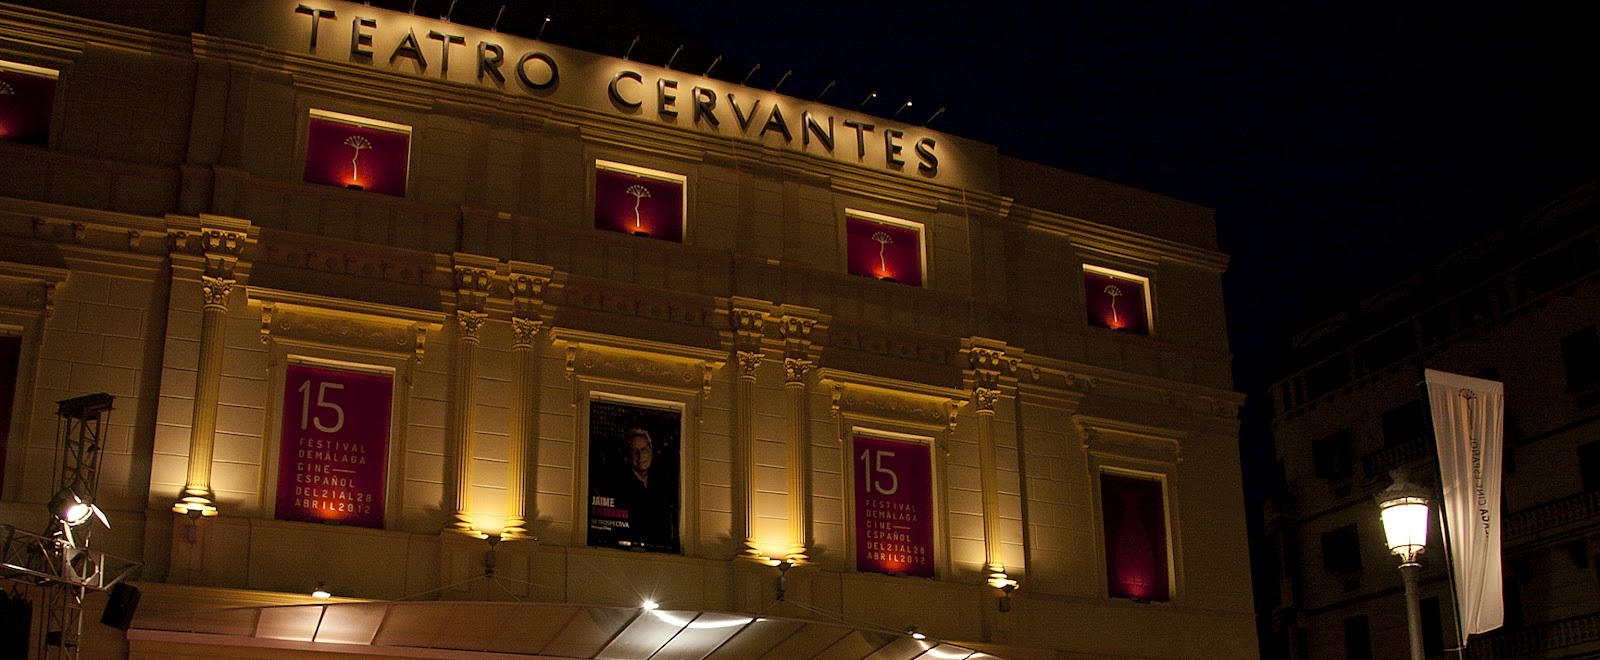 12.Teatro Cervantes